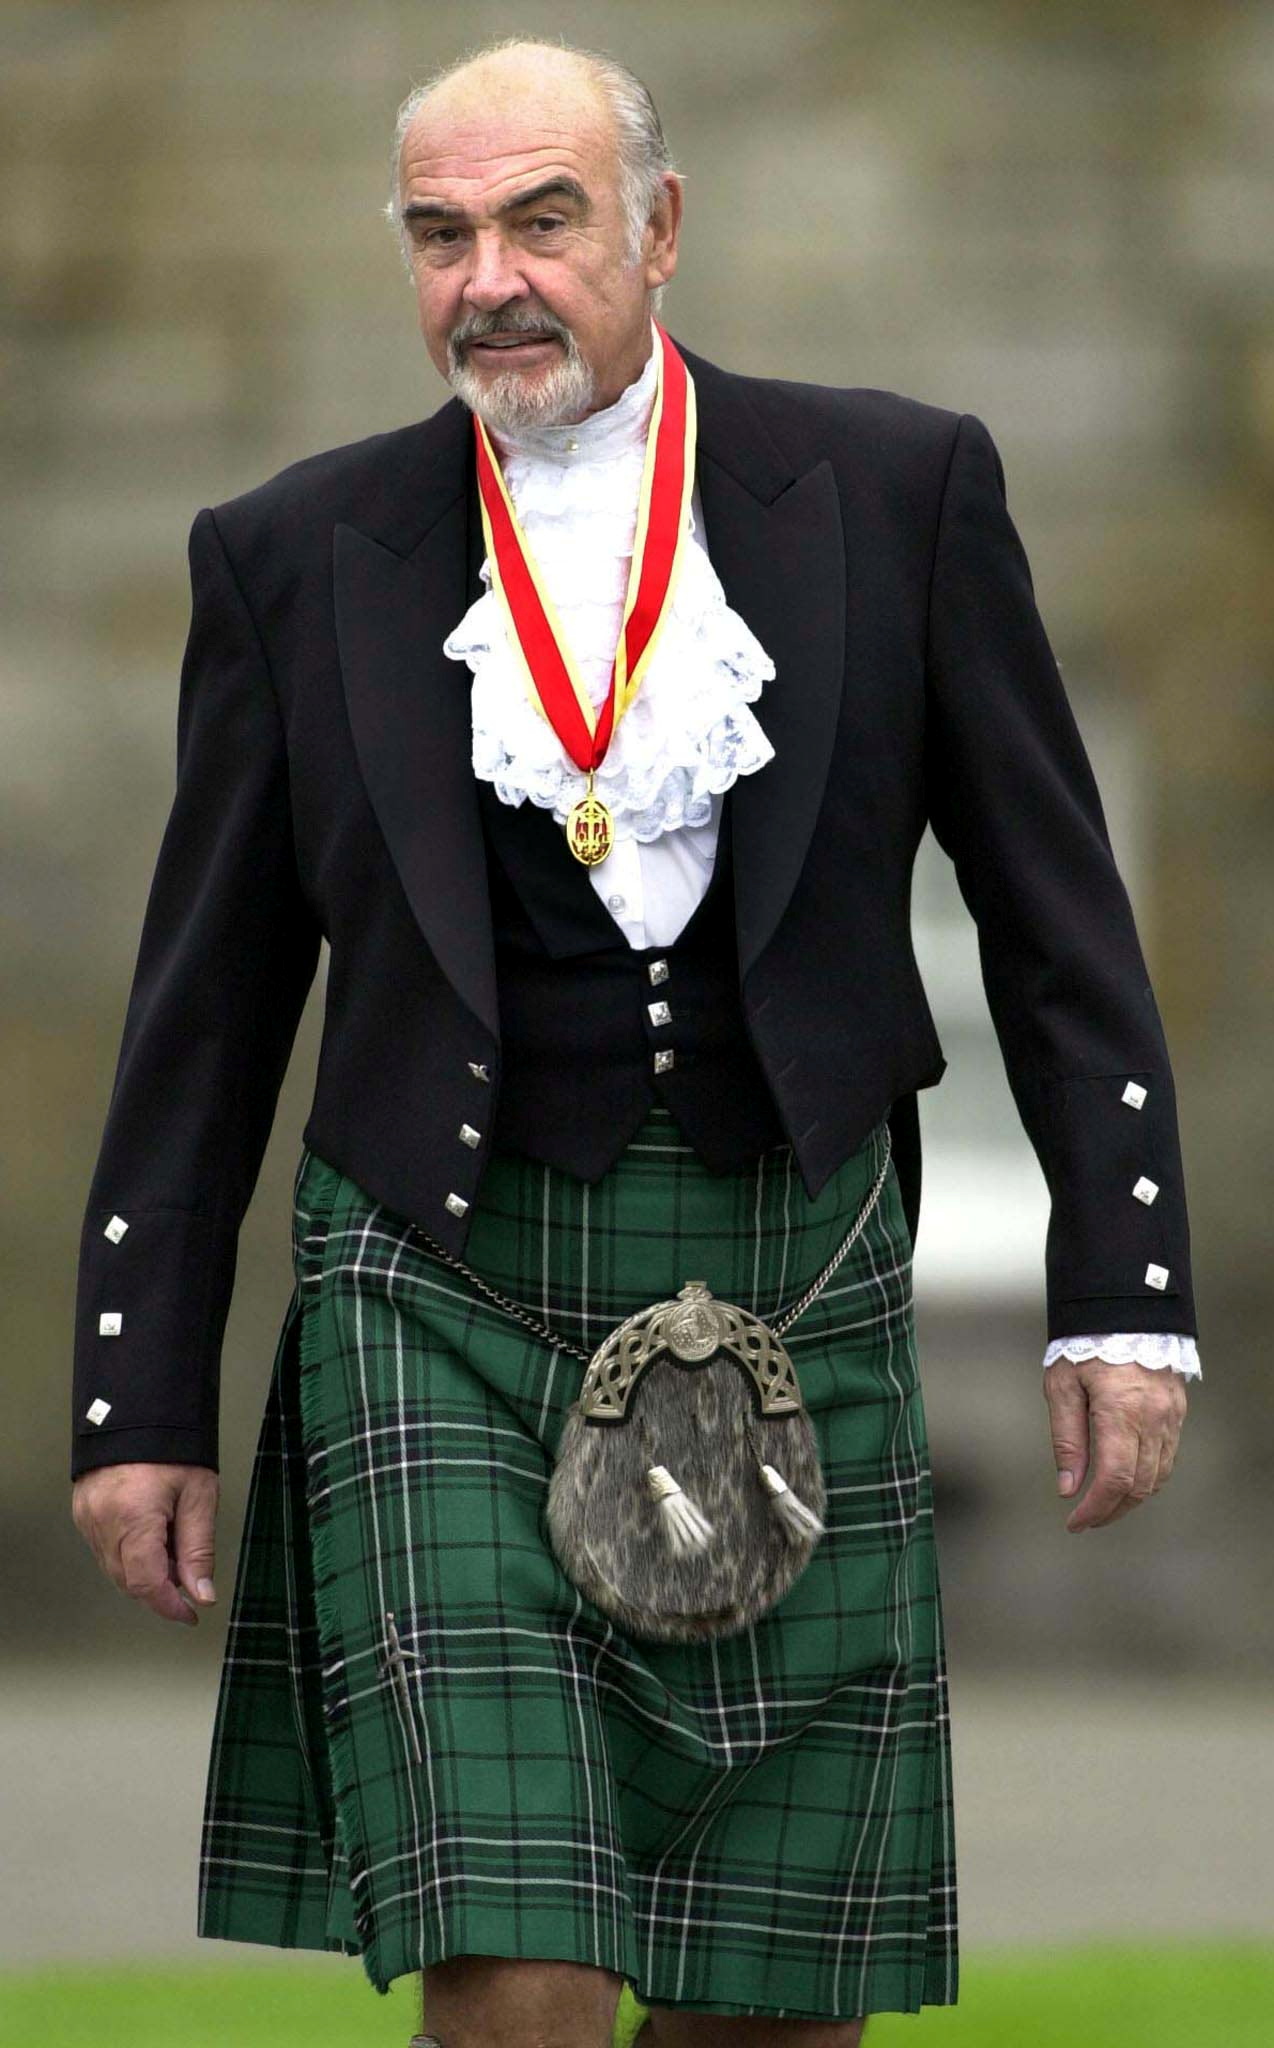 ナイトの称号授与式にスコットランドの伝統衣装キルトを着用したショーン・コネリーさん